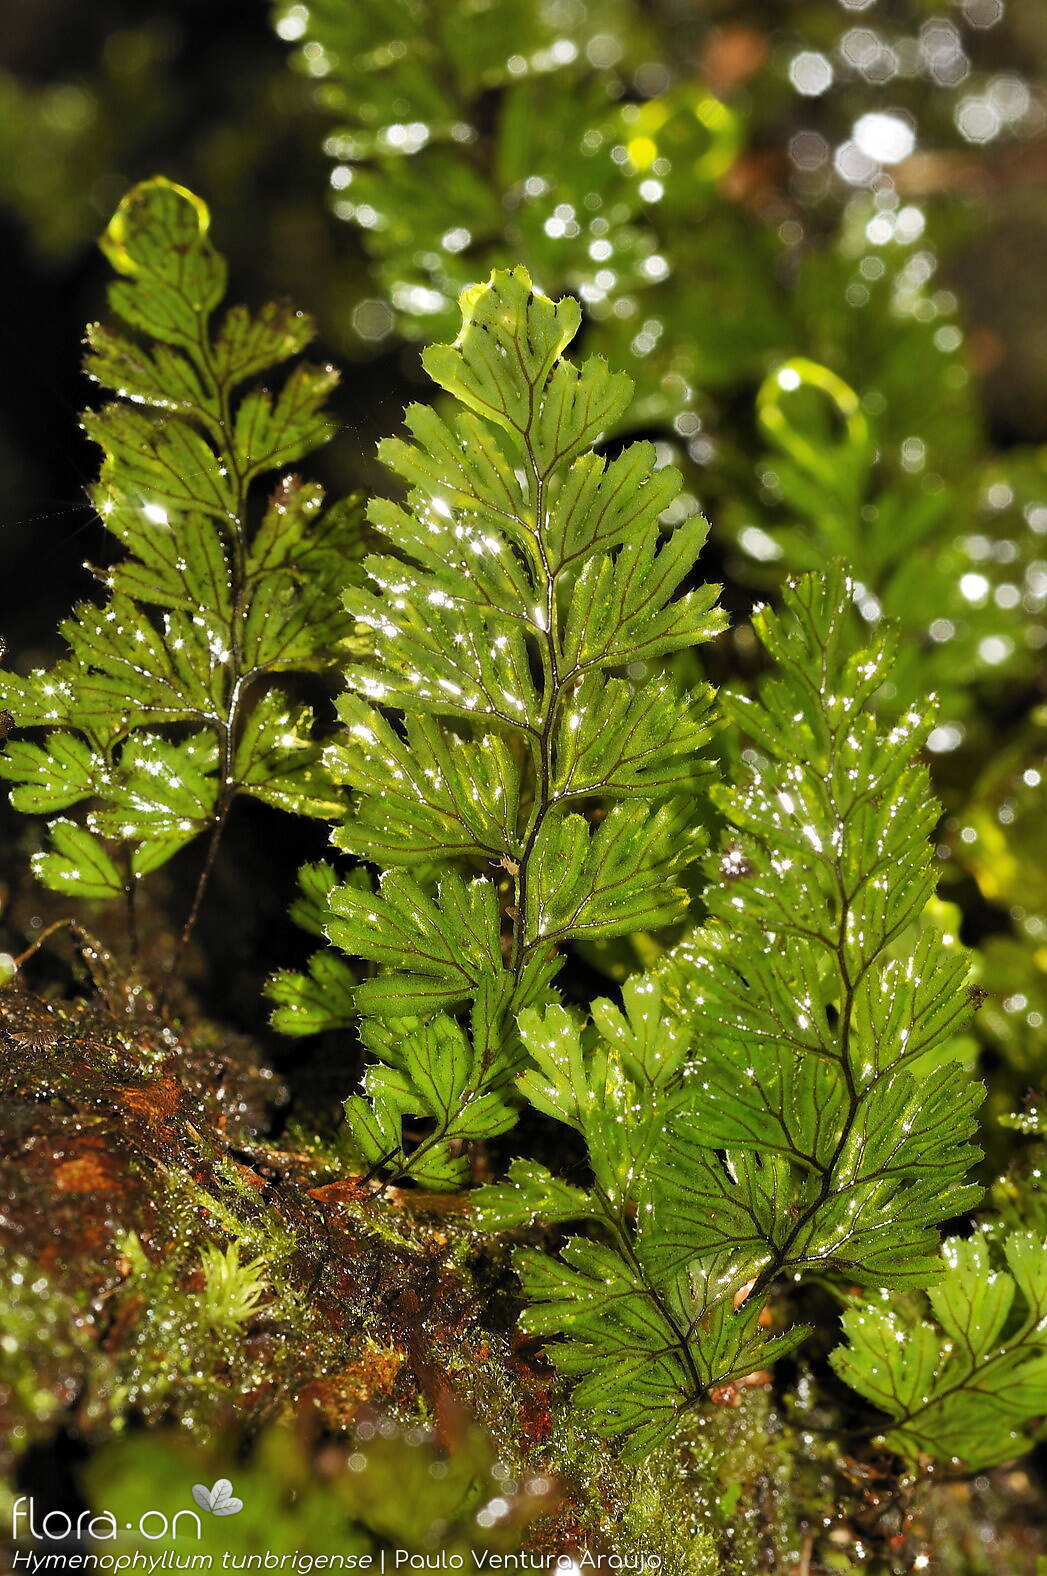 Hymenophyllum tunbrigense - Folha (geral) | Paulo Ventura Araújo; CC BY-NC 4.0